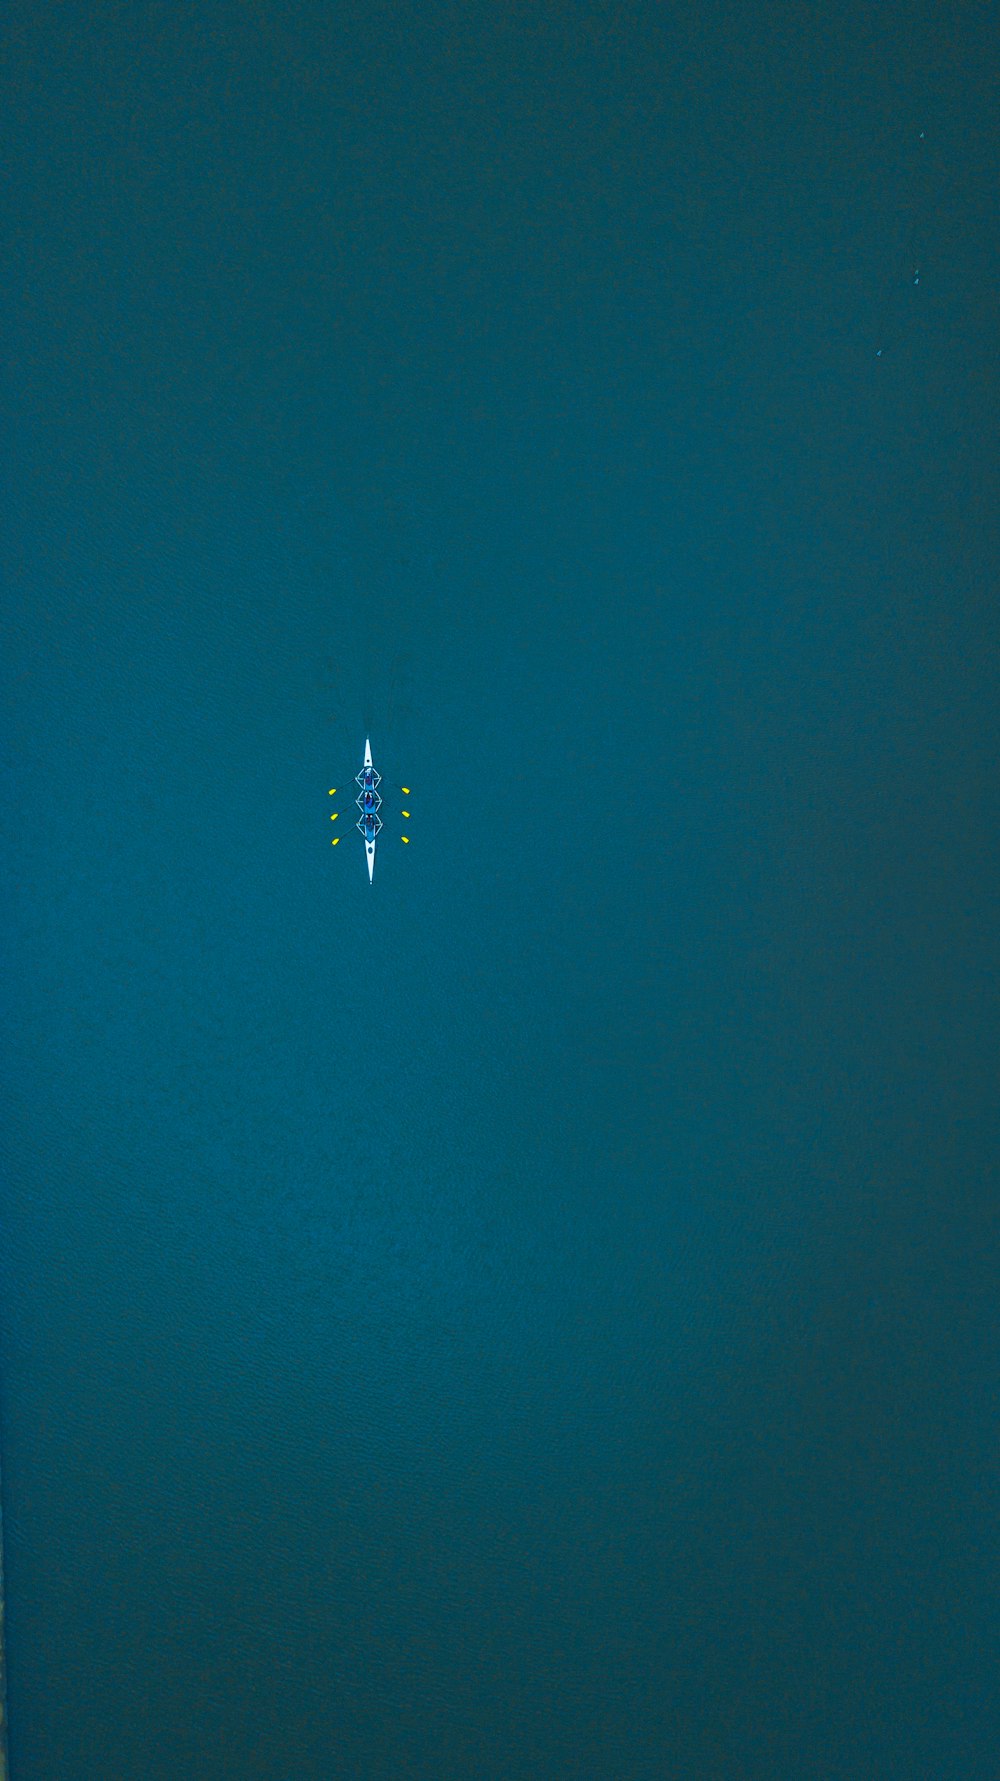 une vue aérienne d’une personne sur une planche de surf dans l’océan